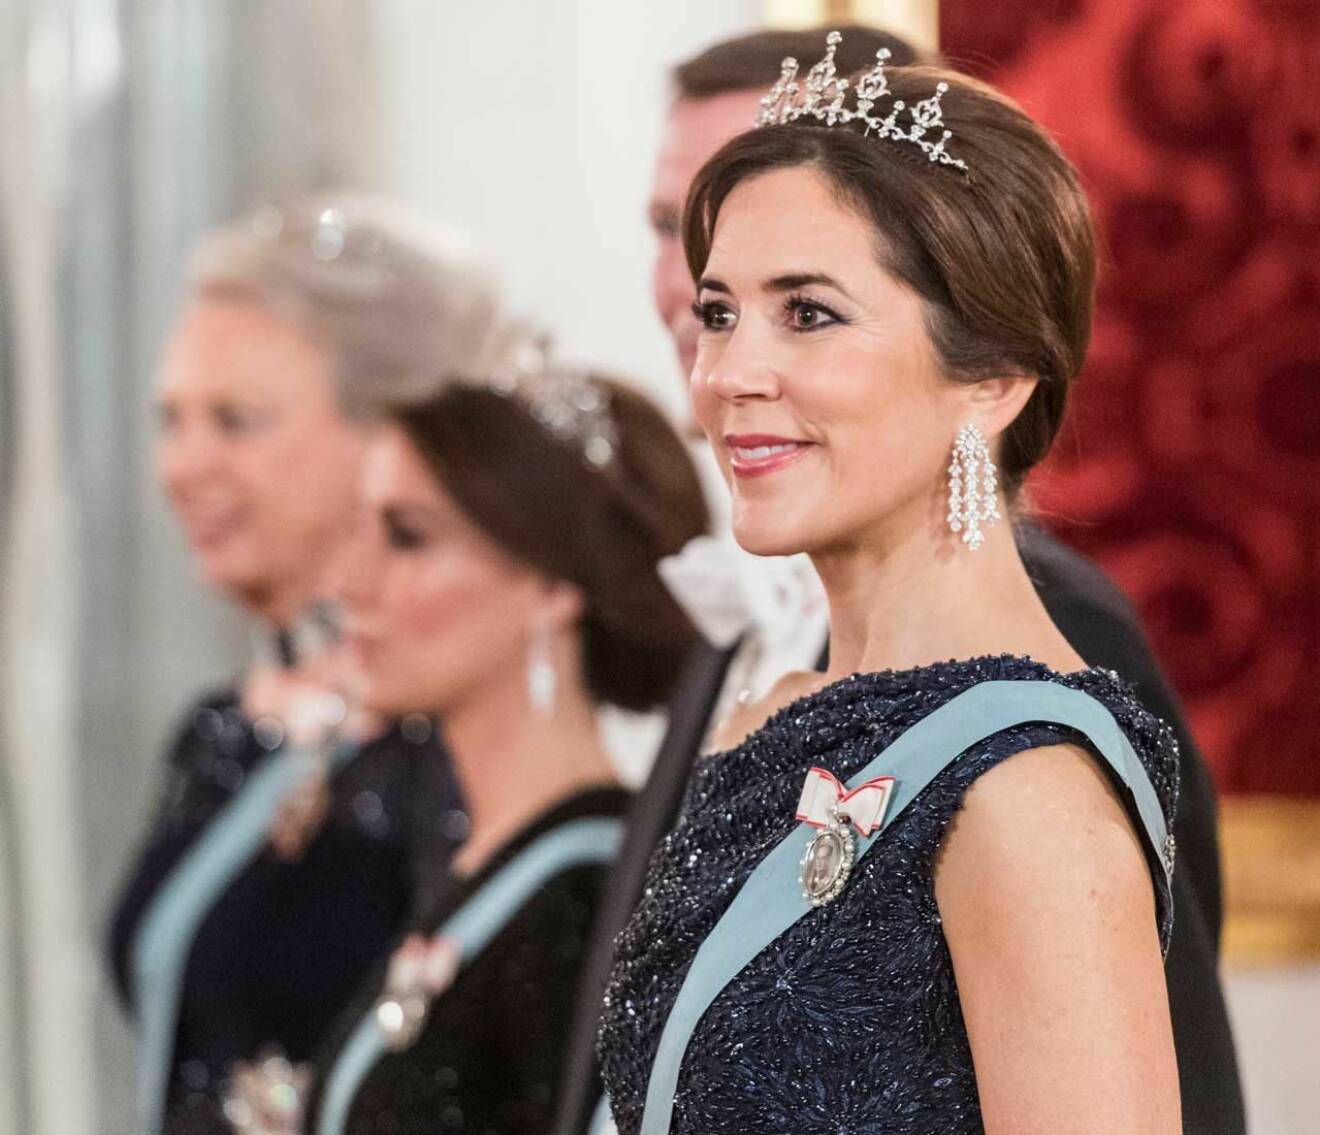 Kronprinsessan Mary i tiara och paljettklänning vid galamiddagen på Christiansborgs slott i Köpenhamn.